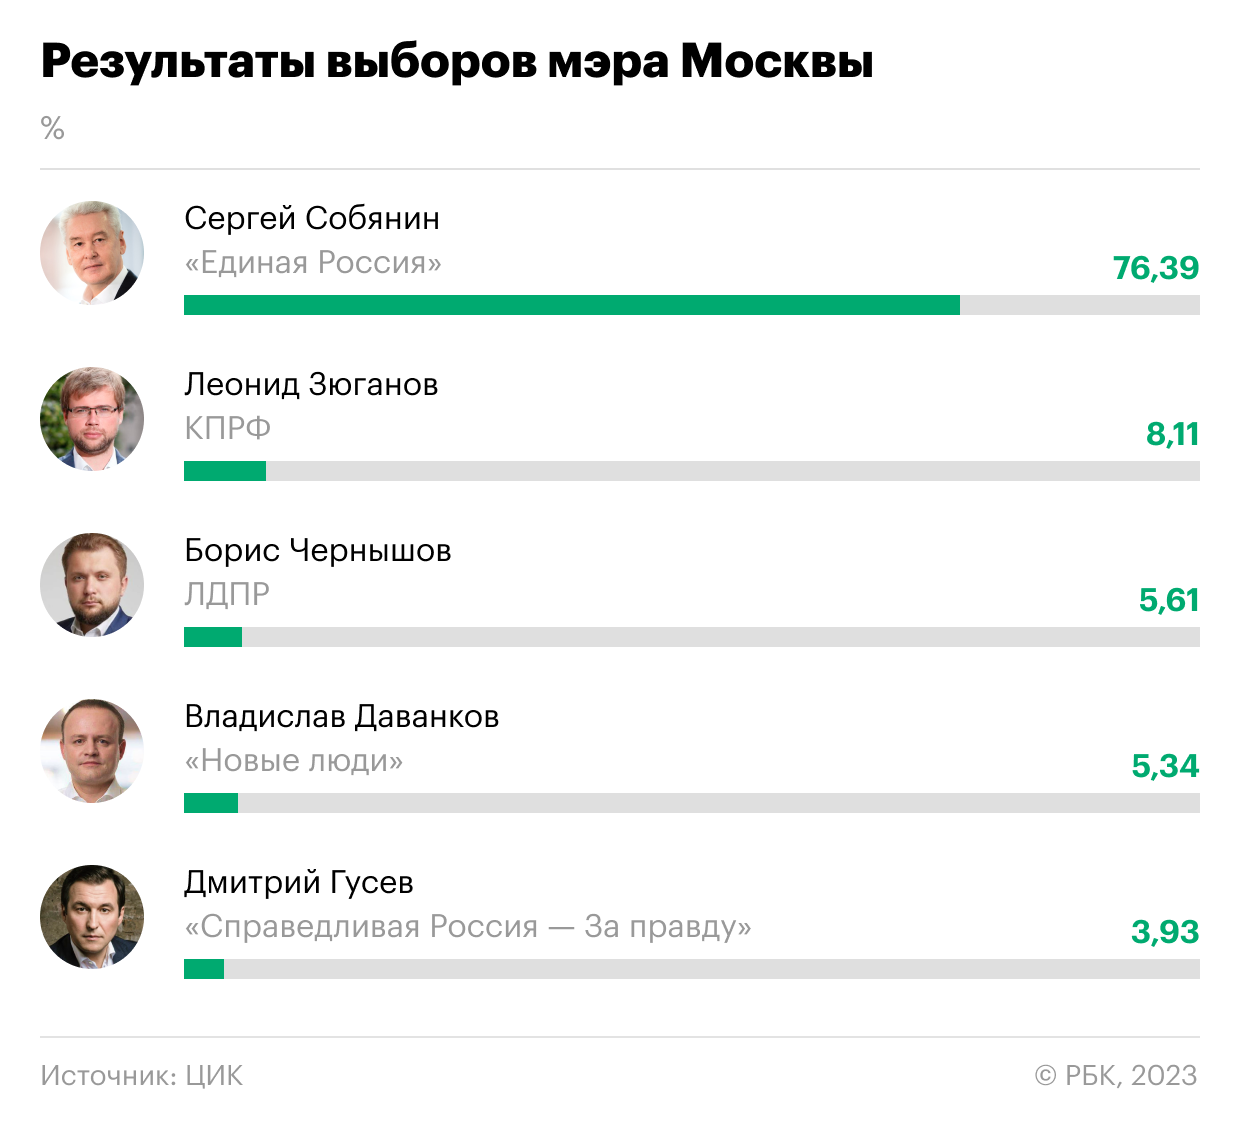 Выборы губернатора 2023 результаты. Результаты выборов мэра Москвы 2023. Результпты авборов в Росси. Результаты выборов в Москве. Результаты выборы 2023.